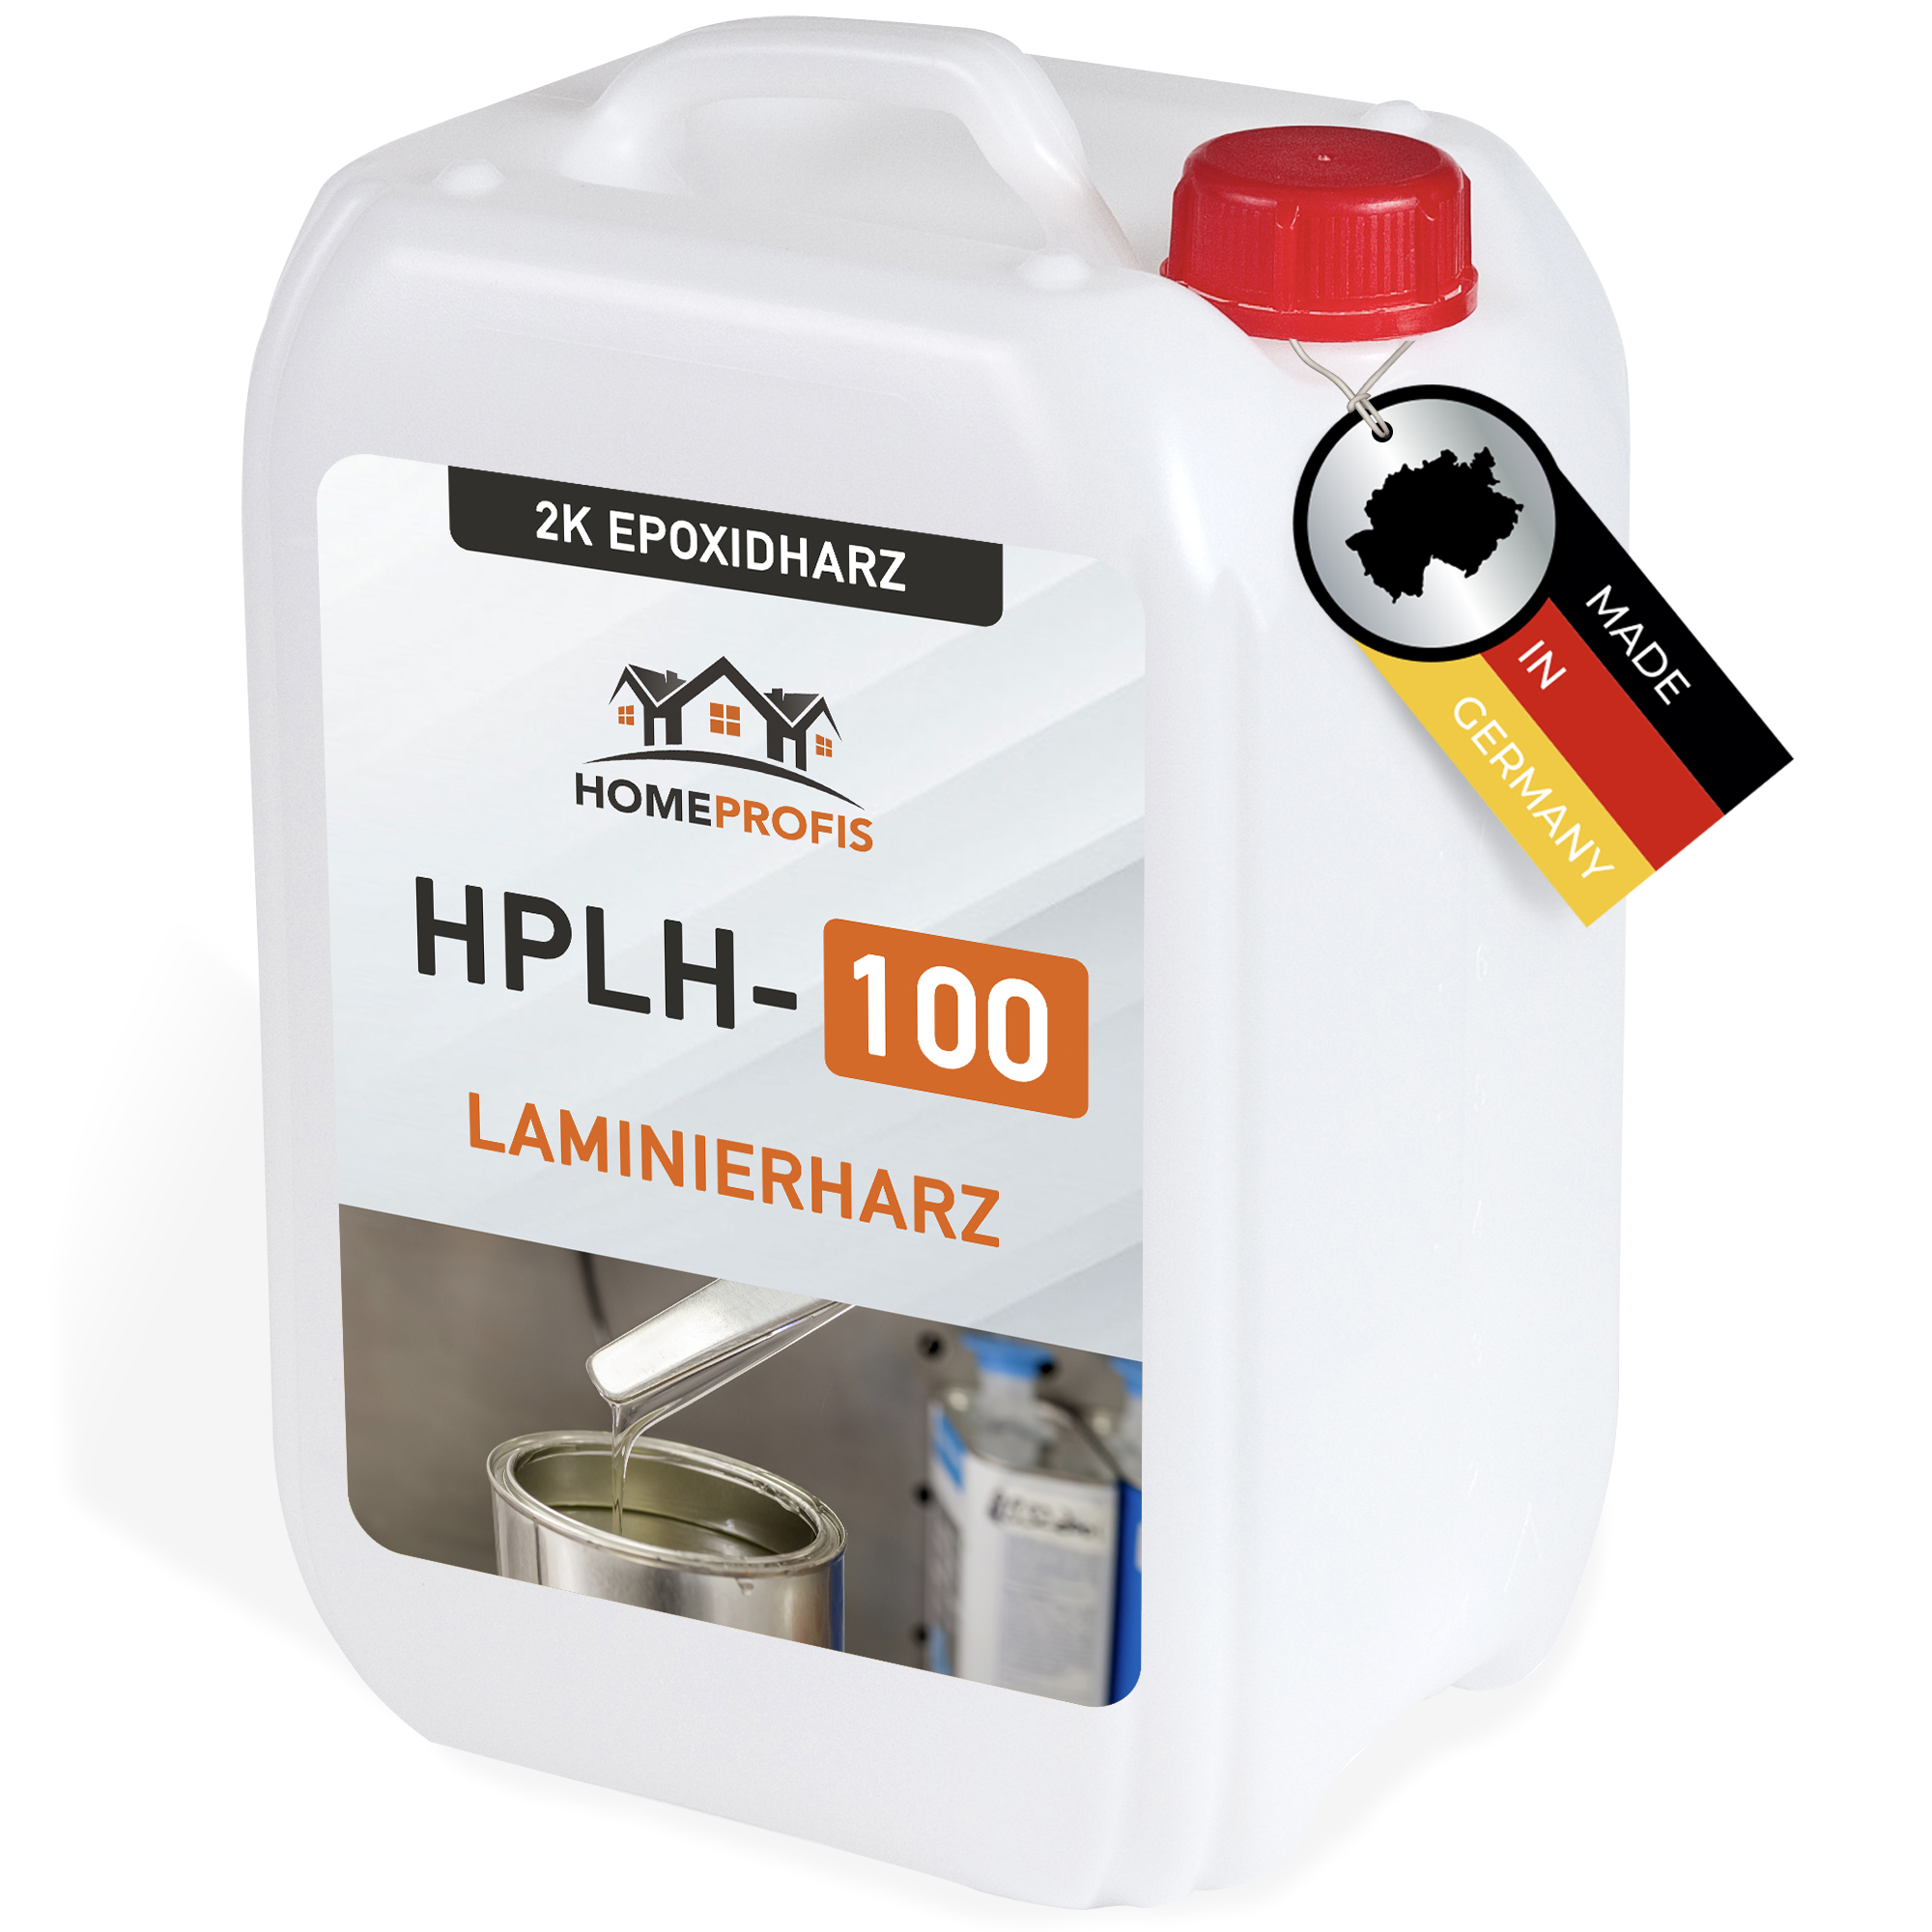 HPLH-100 transparentes Laminierharz für Bastel- und Modellbauarbeiten